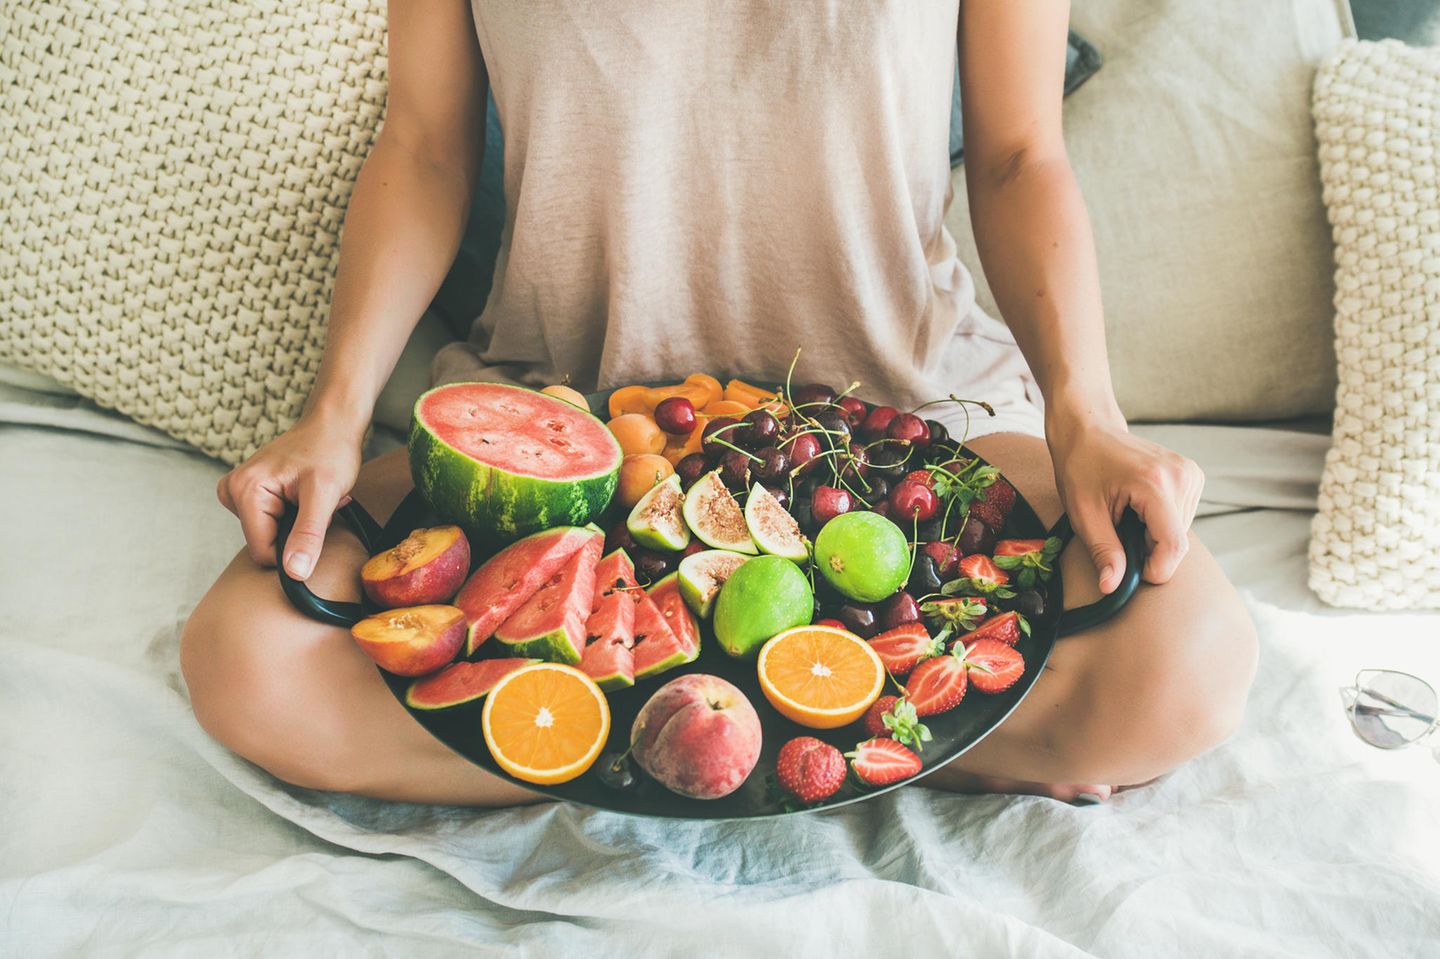 Frau hält einen Obstkorb mit Früchten wie Orangen, Wassermelone, Erdbeeren, Kirschen